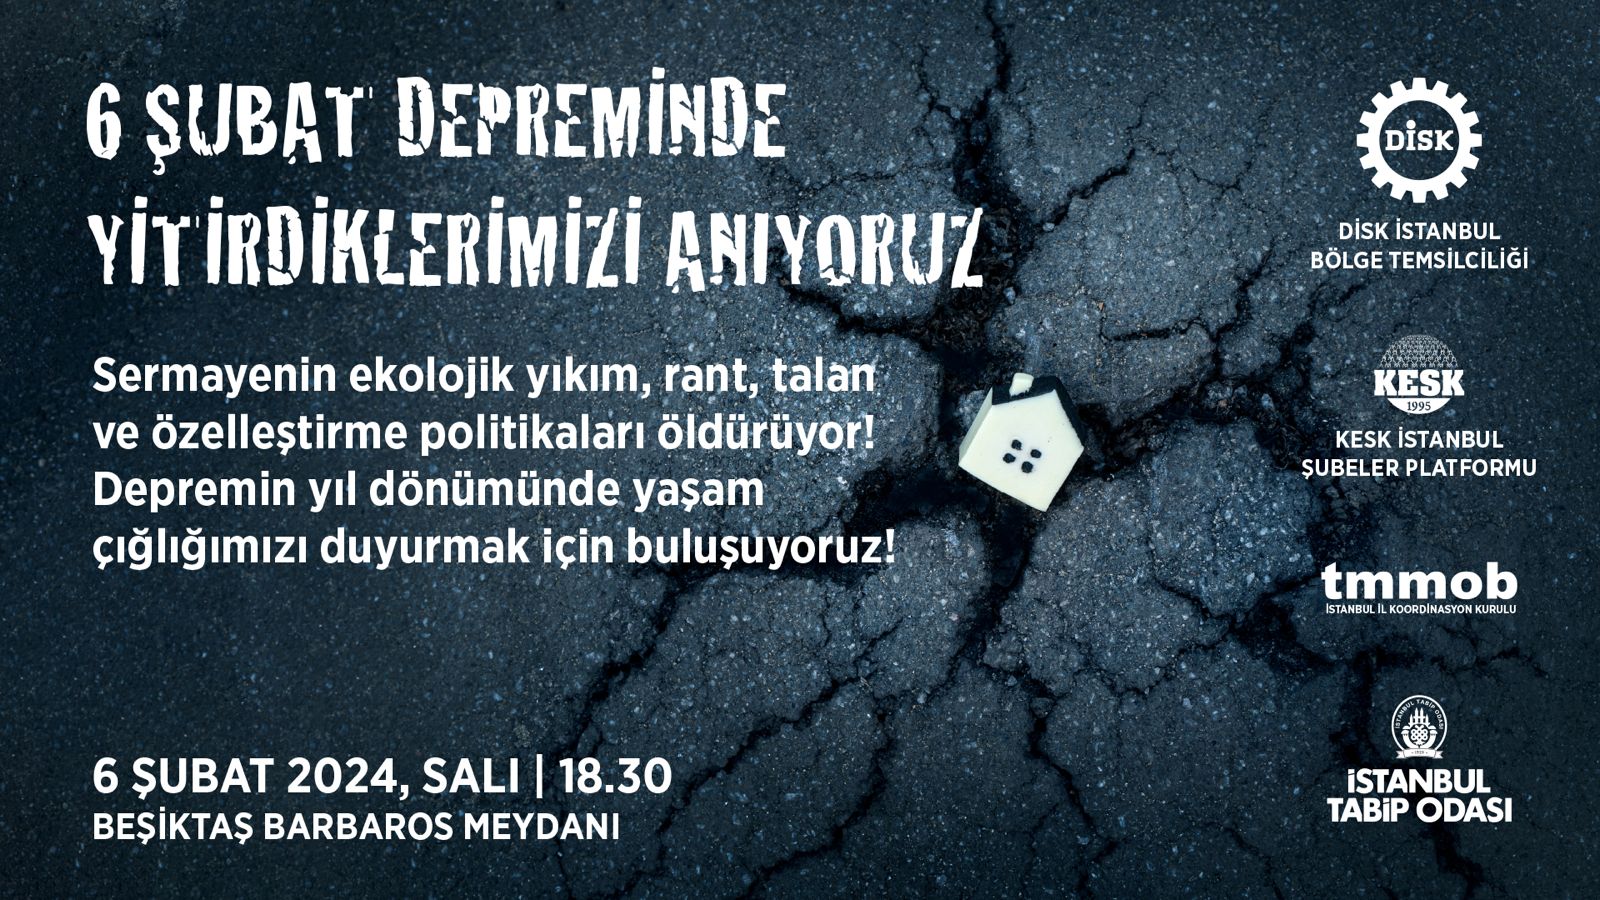 📢 TMMOB İstanbul İl Koordinasyon Kurulu (İKK) Çağrı!